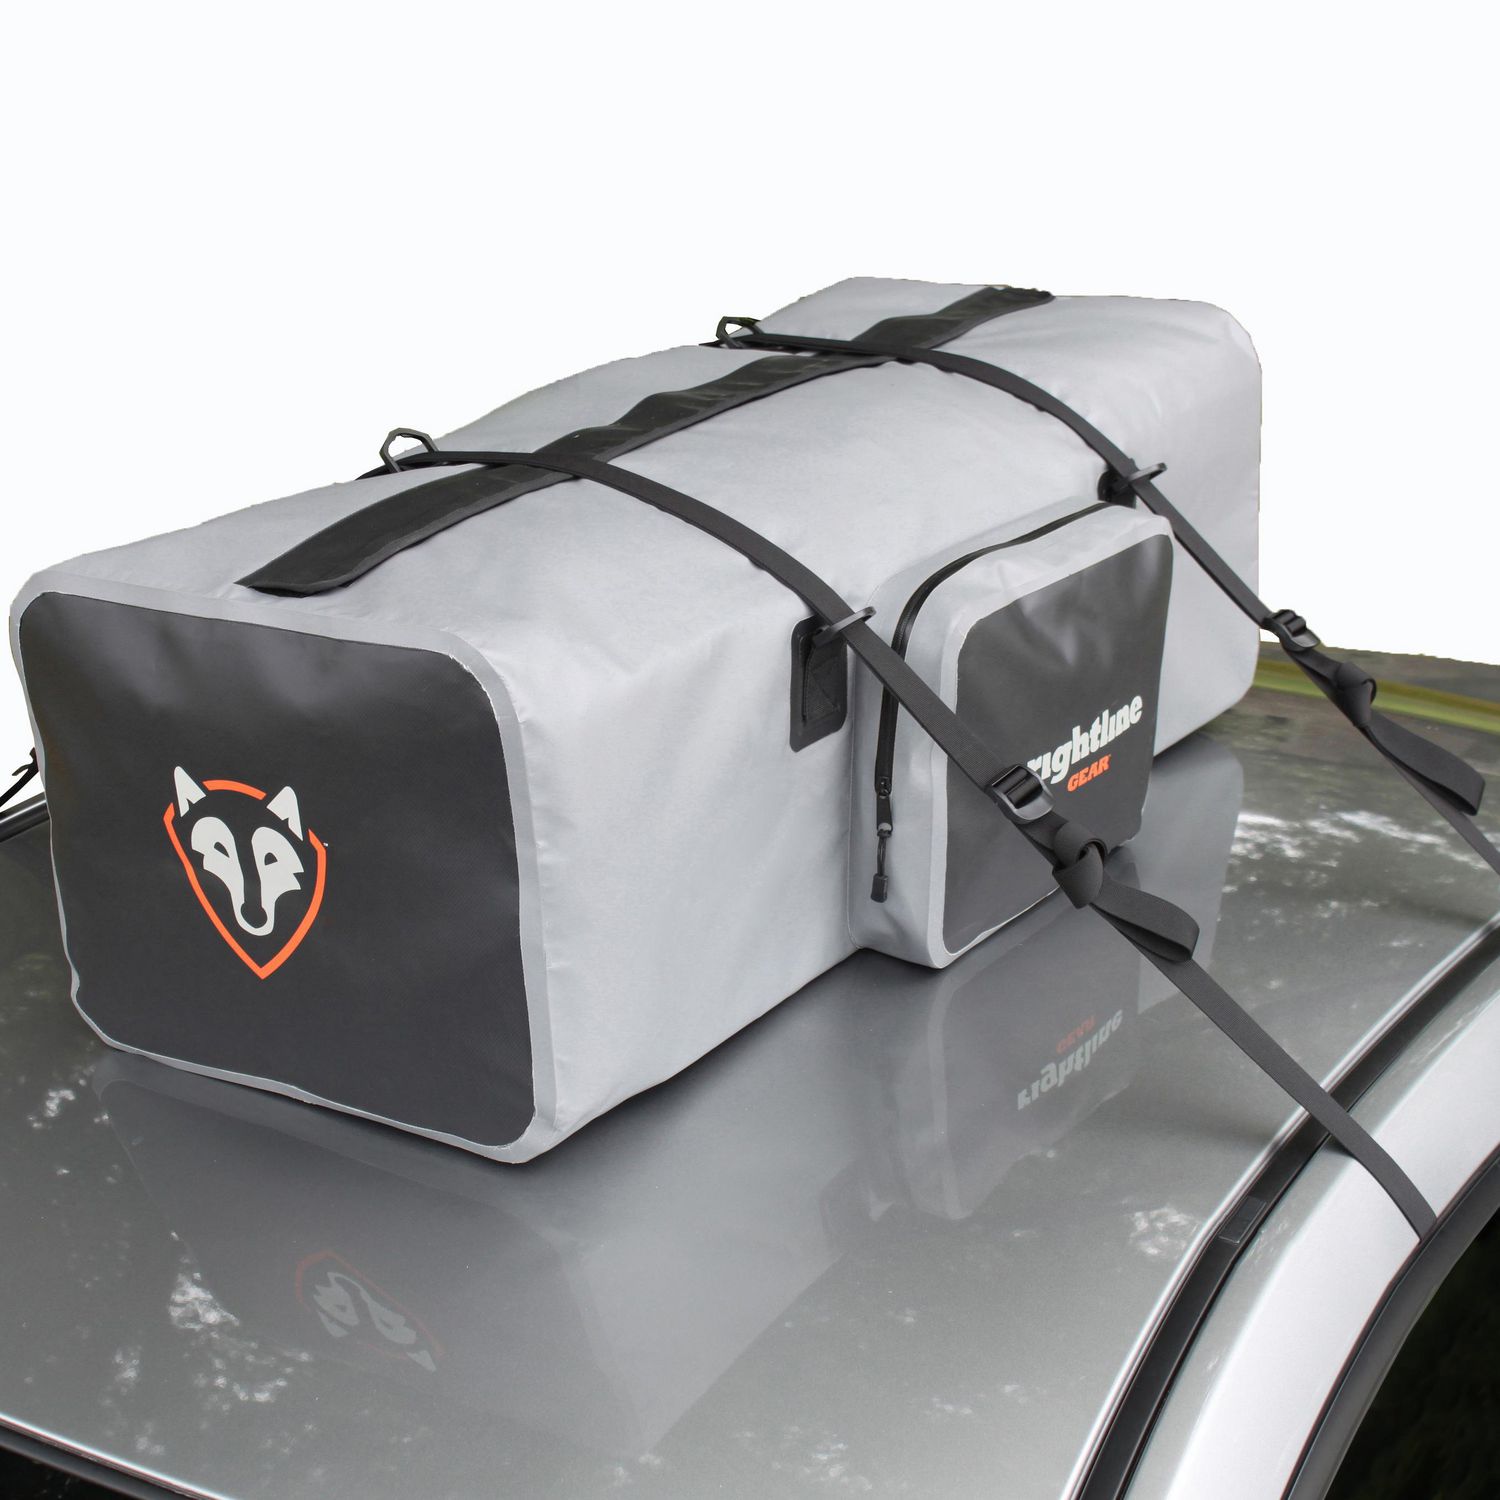 Rightline Gear Gray/Black Waterproof Car Top/Luggage Rack Duffel Bag, Rightline Gear Car Top Duffle Bag